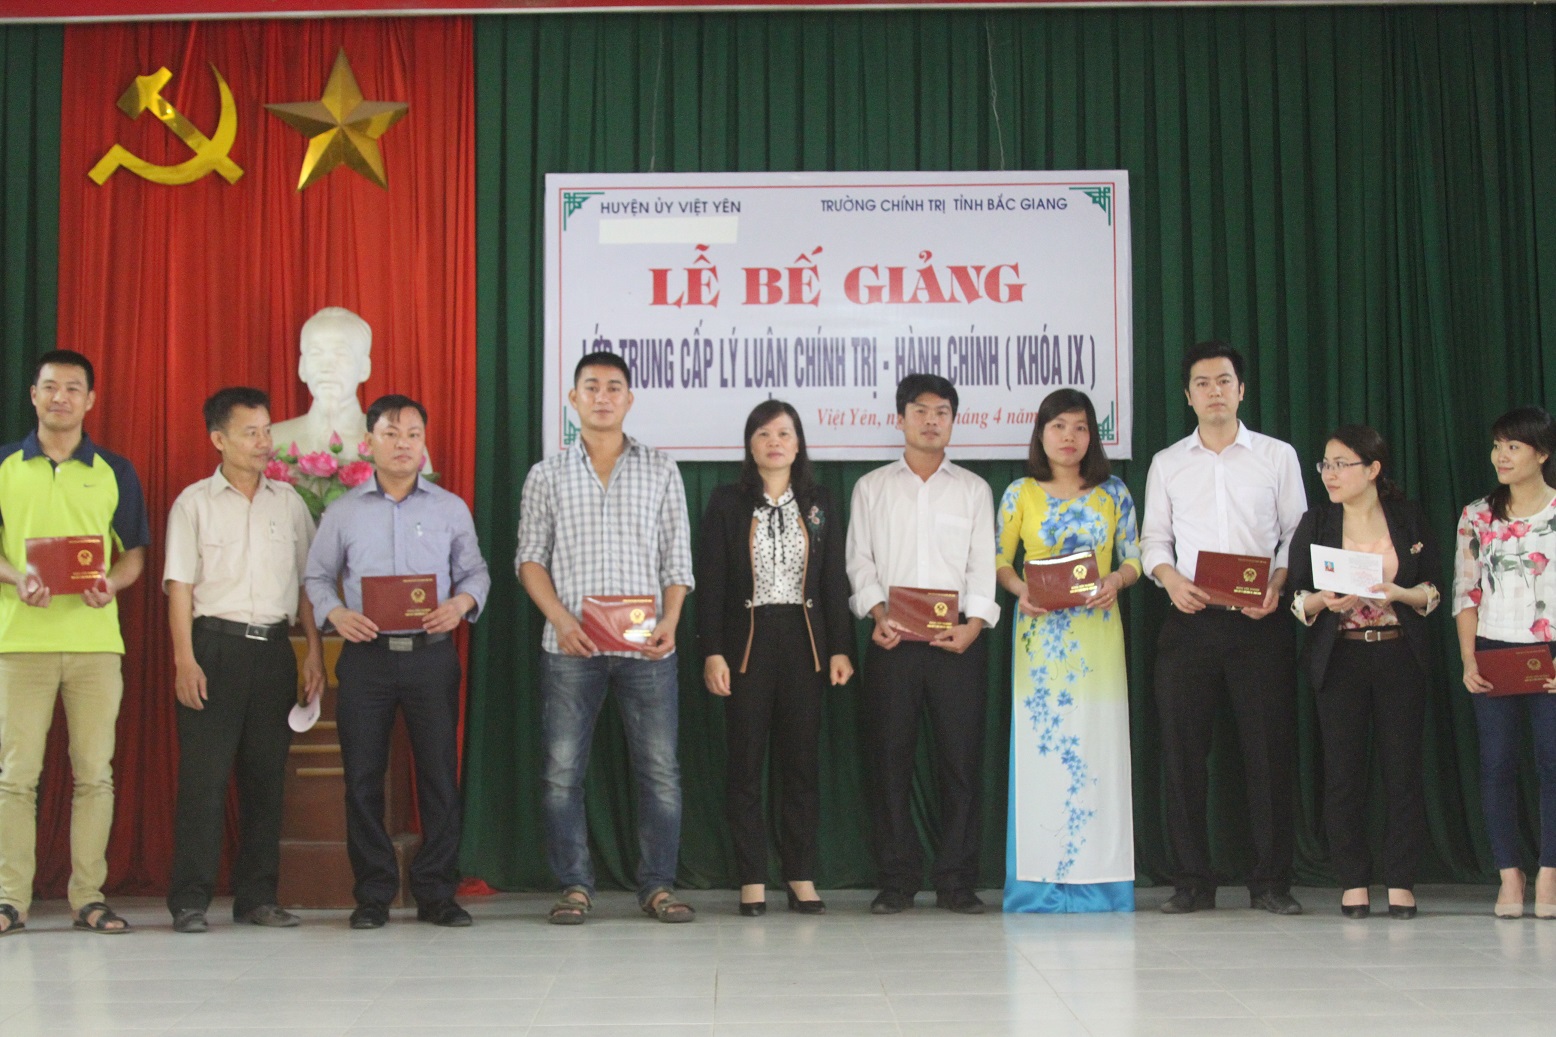 Lễ Bế giảng lớp Trung cấp lý luận chính trị - Hành chính khóa IX huyện Việt Yên